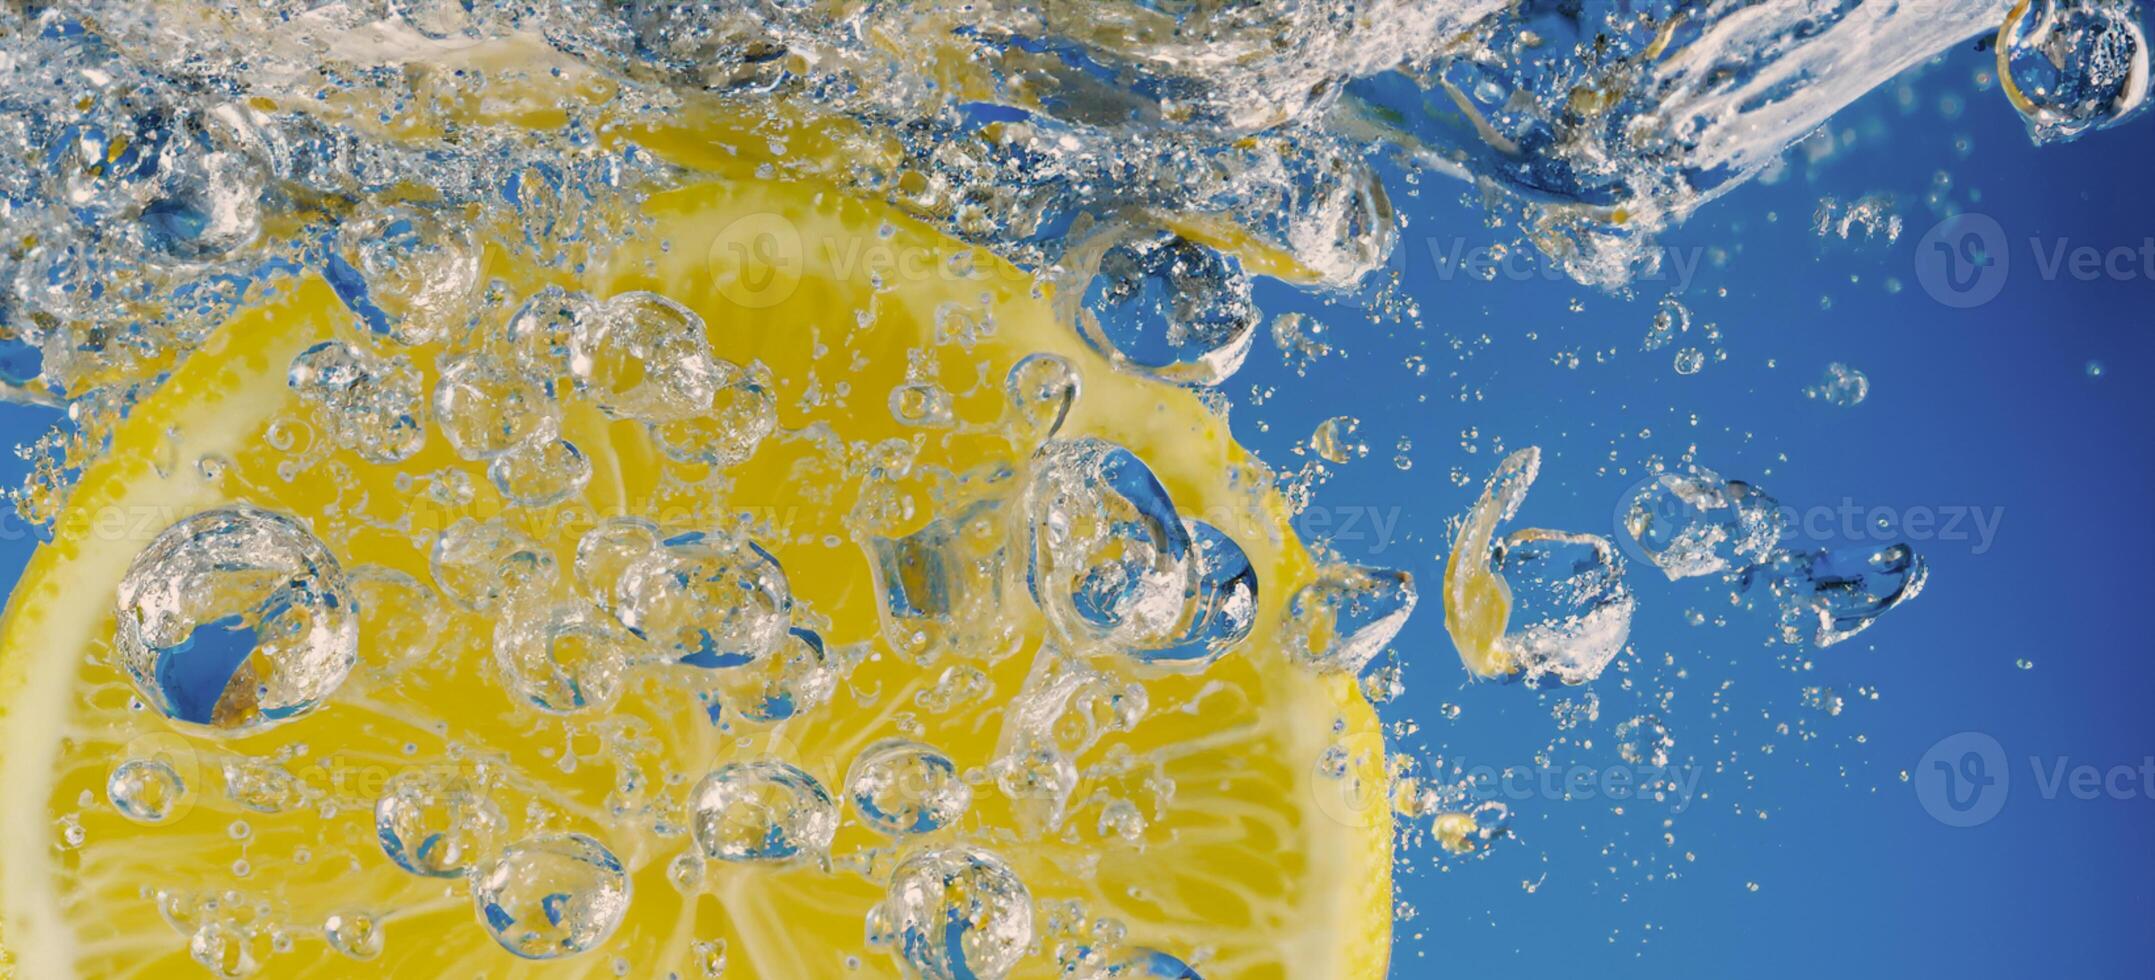 submarino limón rebanada en soda agua o limonada con burbujas foto